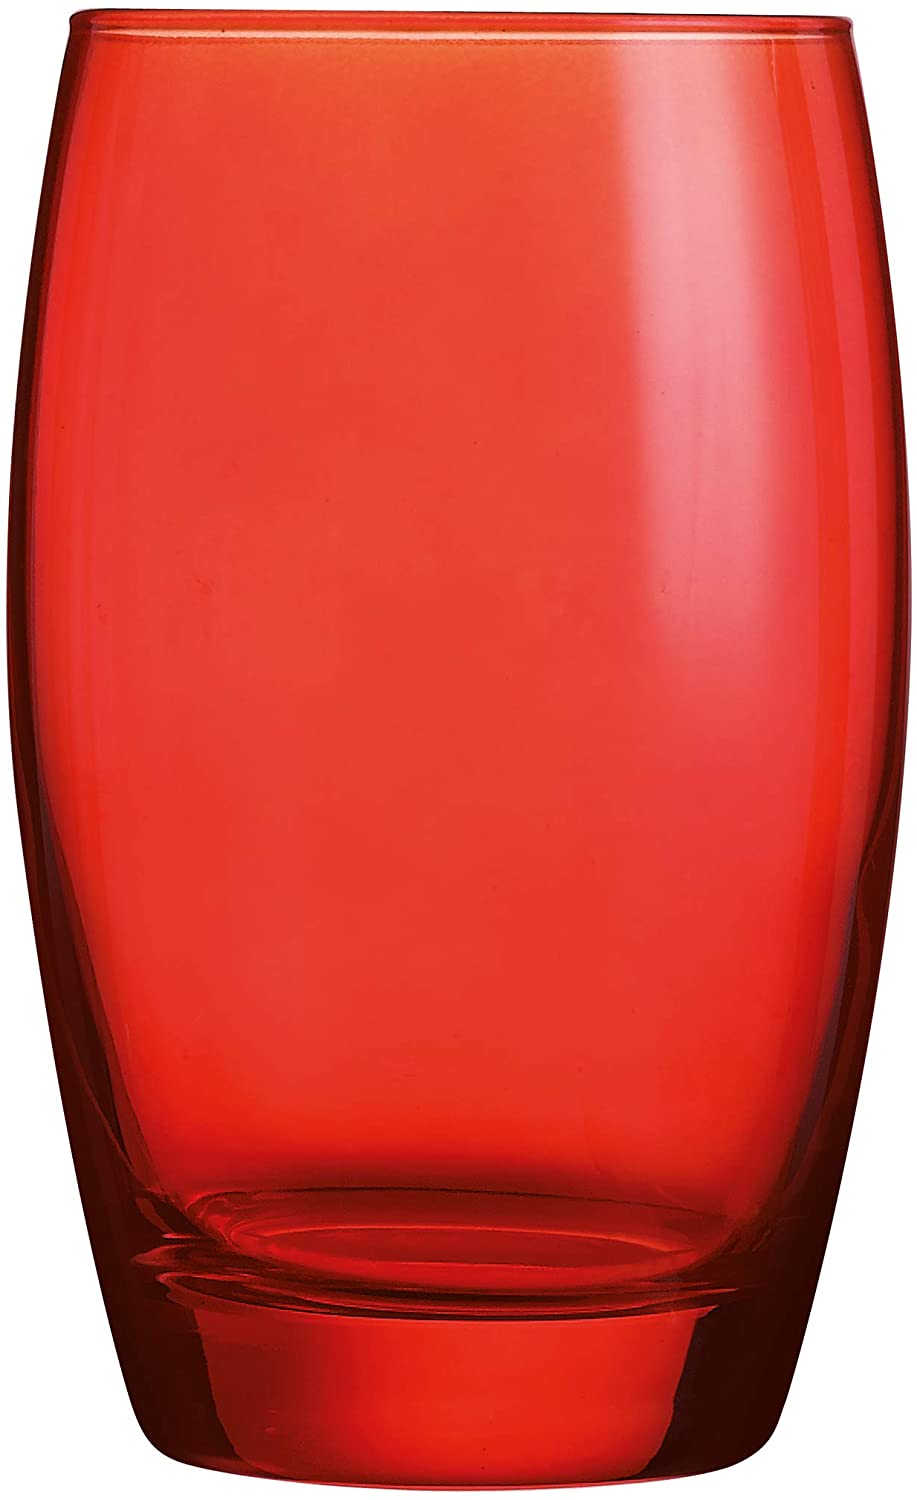 Arcoroc Salto Color, red, 350ml